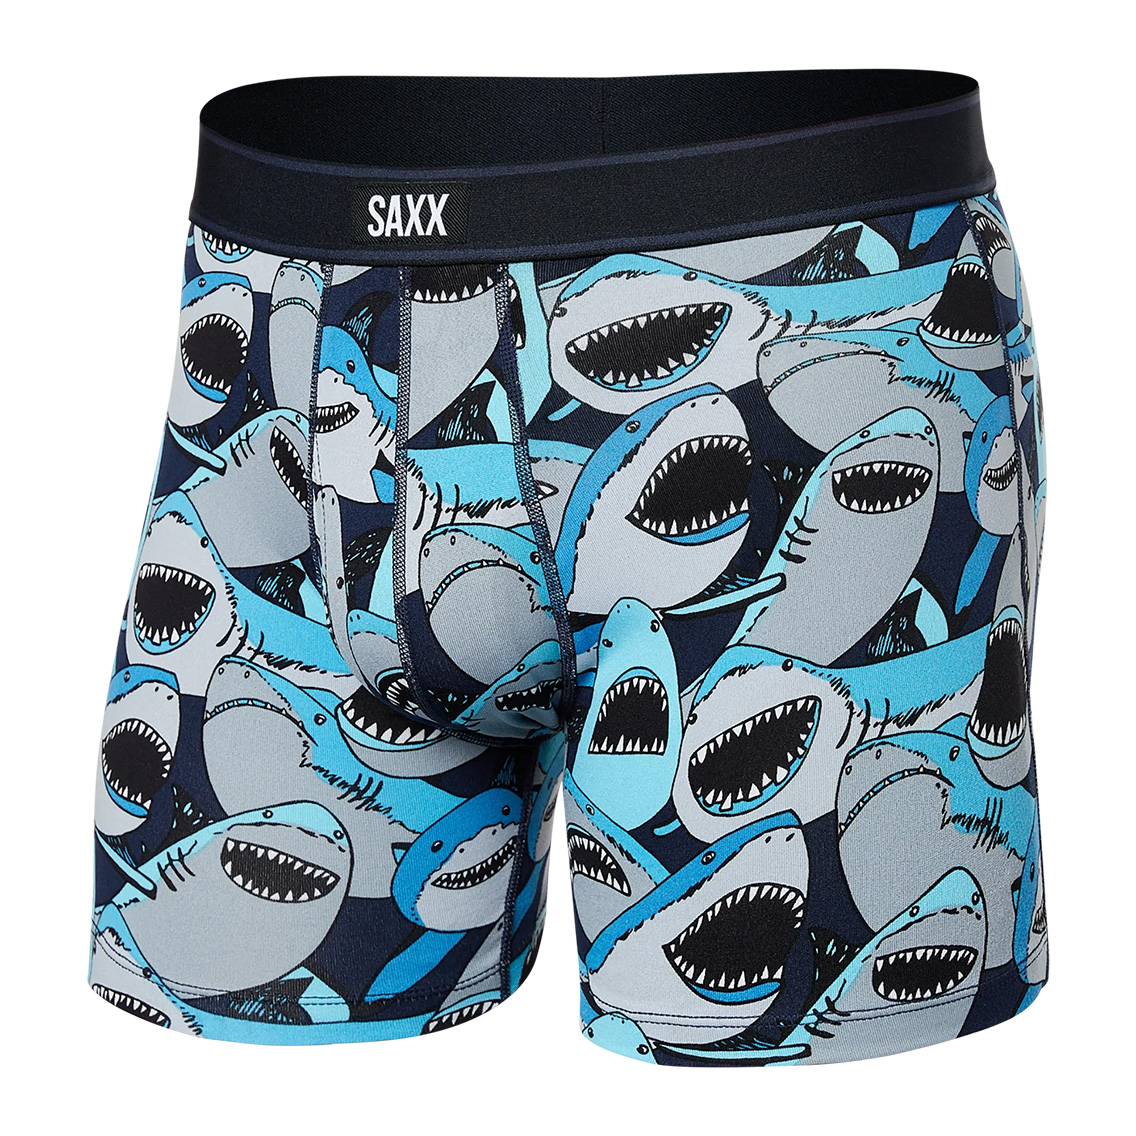 [SXBB11F-STN] SAXX サックス ボクサーパンツ メンズ アンダーウェア インナー 男性 下着 ブランド おすすめ 人気 プレゼント